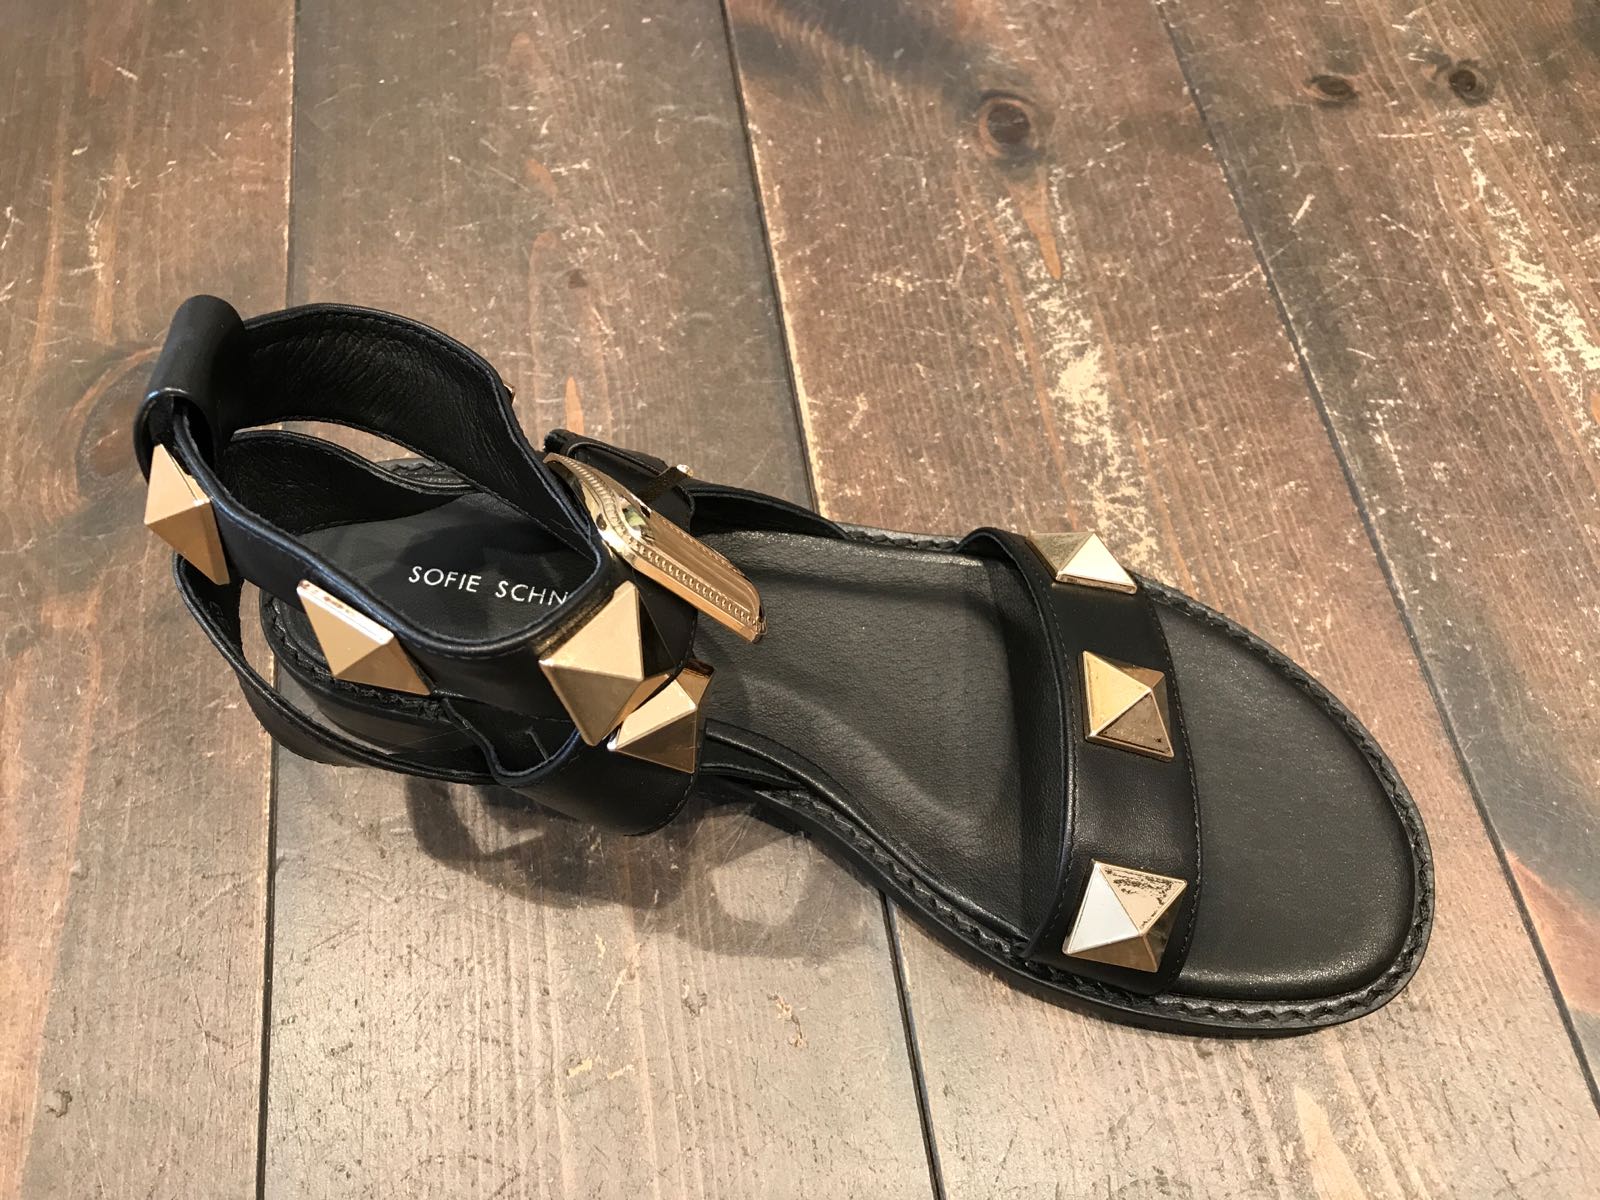 Køb Chunky sandal med spænder og Sofie online » | Miss Obling